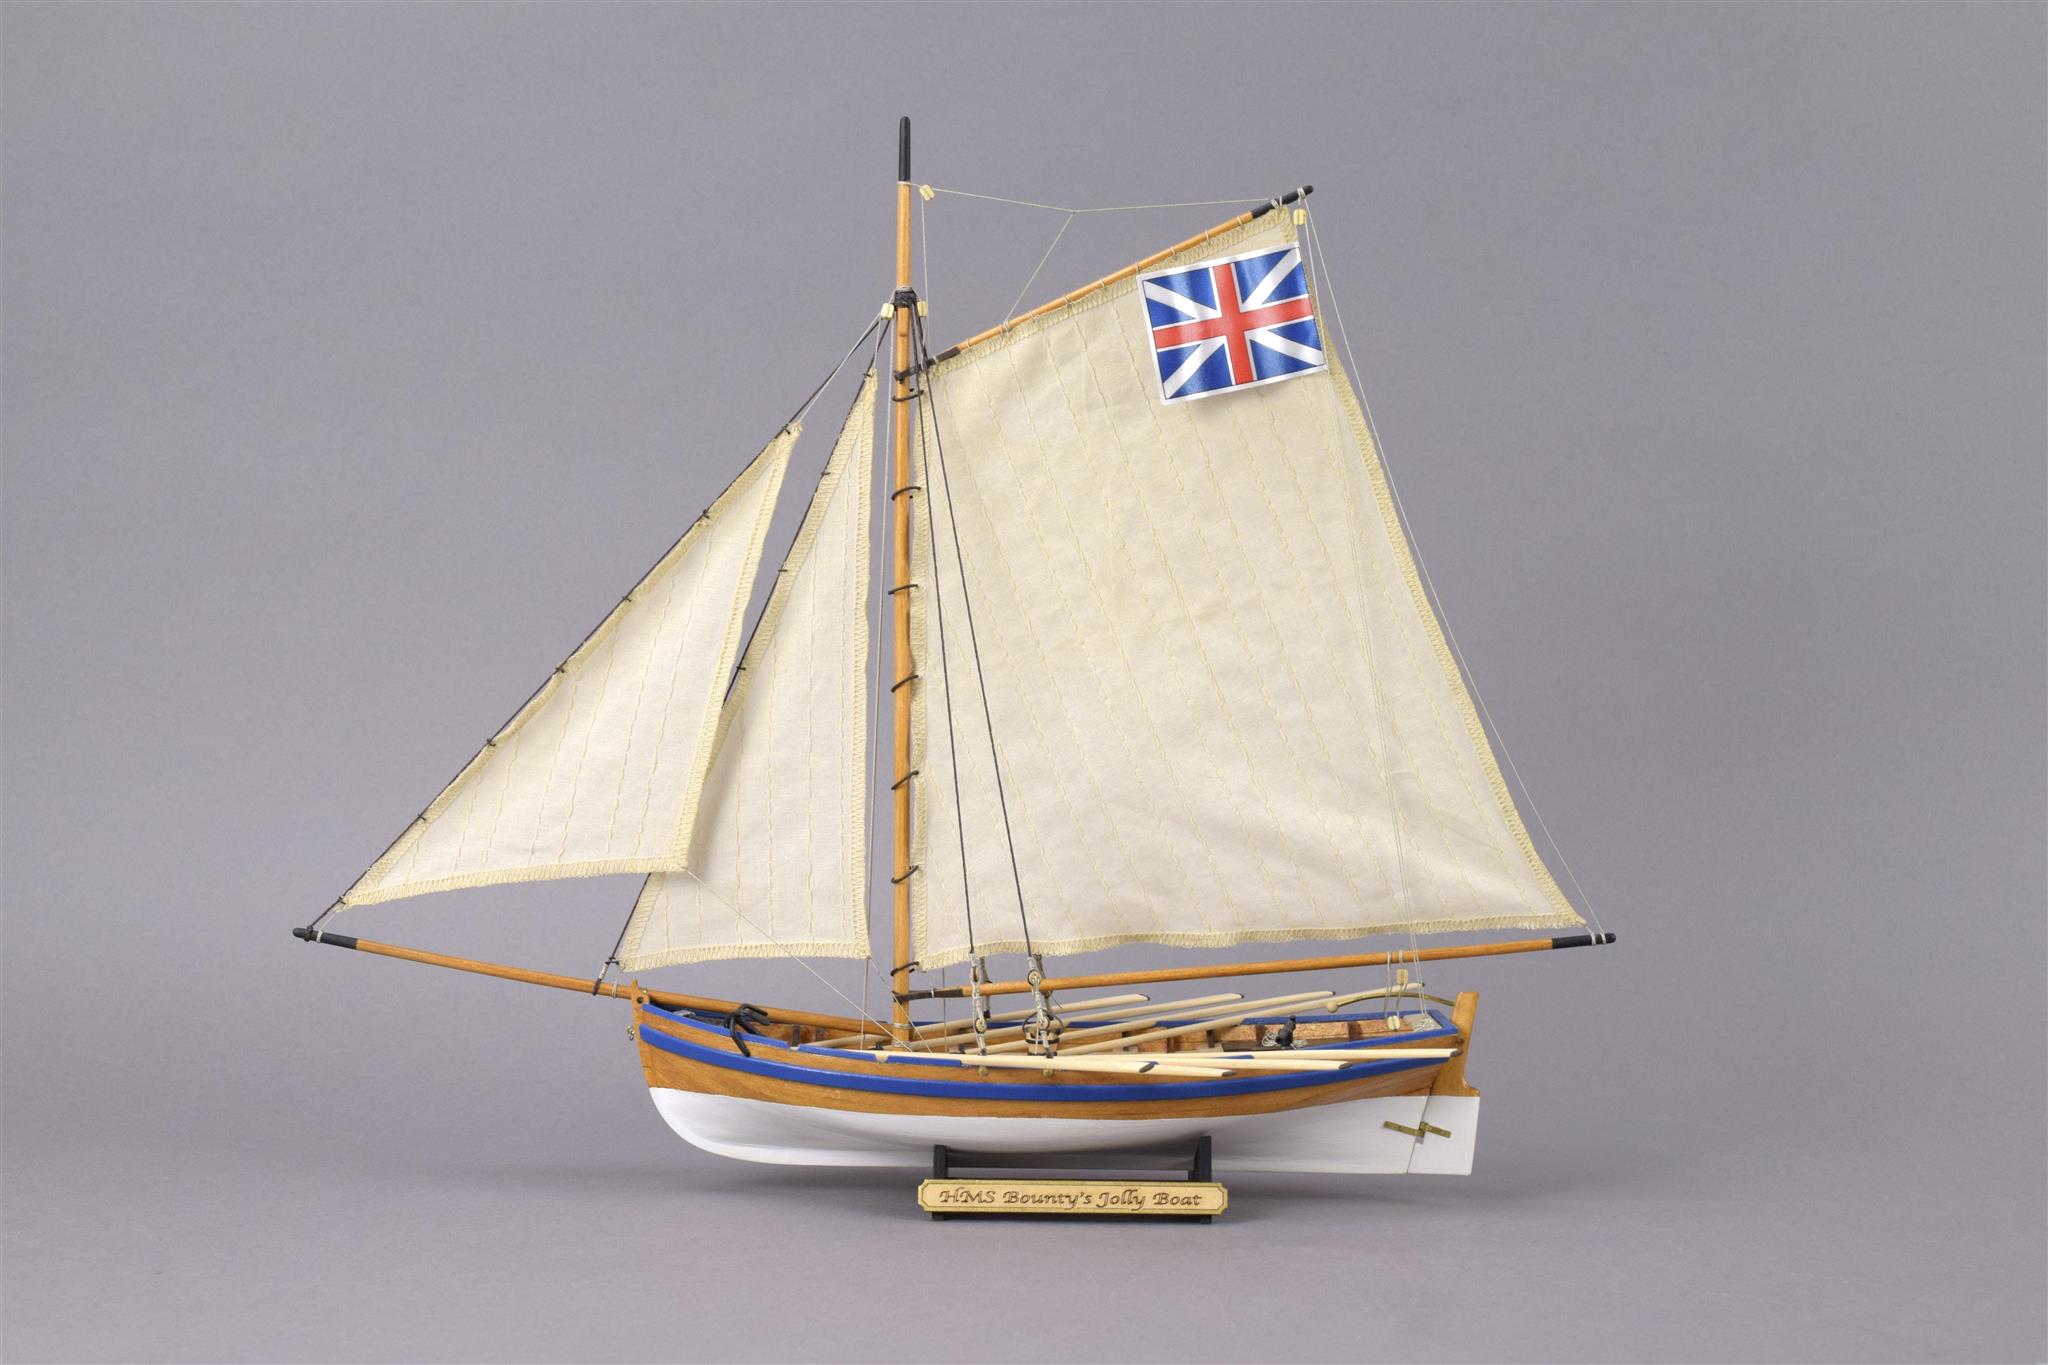 Maqueta en Madera de Bote Auxiliar HMS Bounty –Jolly Boat- (19004-N) de Artesanía Latina.